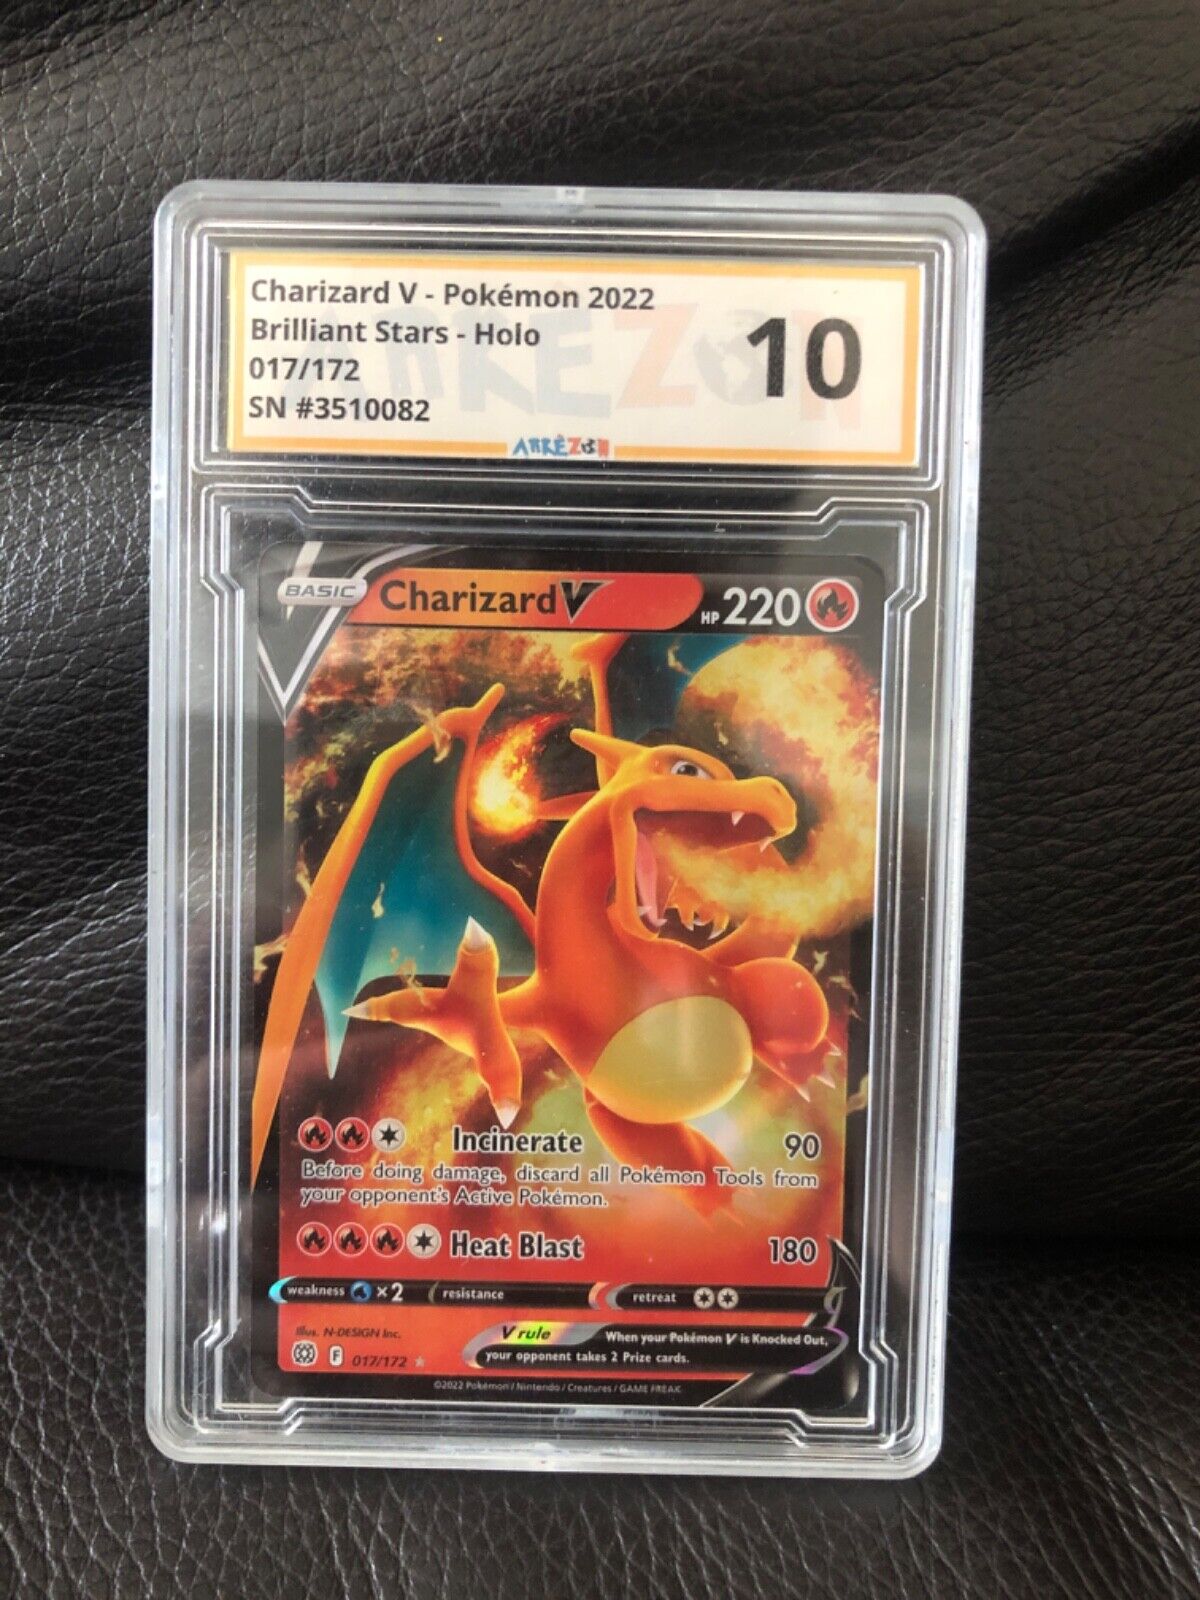 Pokemon Card Charizard V eng graded 10 - Holo 017/172 Brilliant stars 2021 mint 